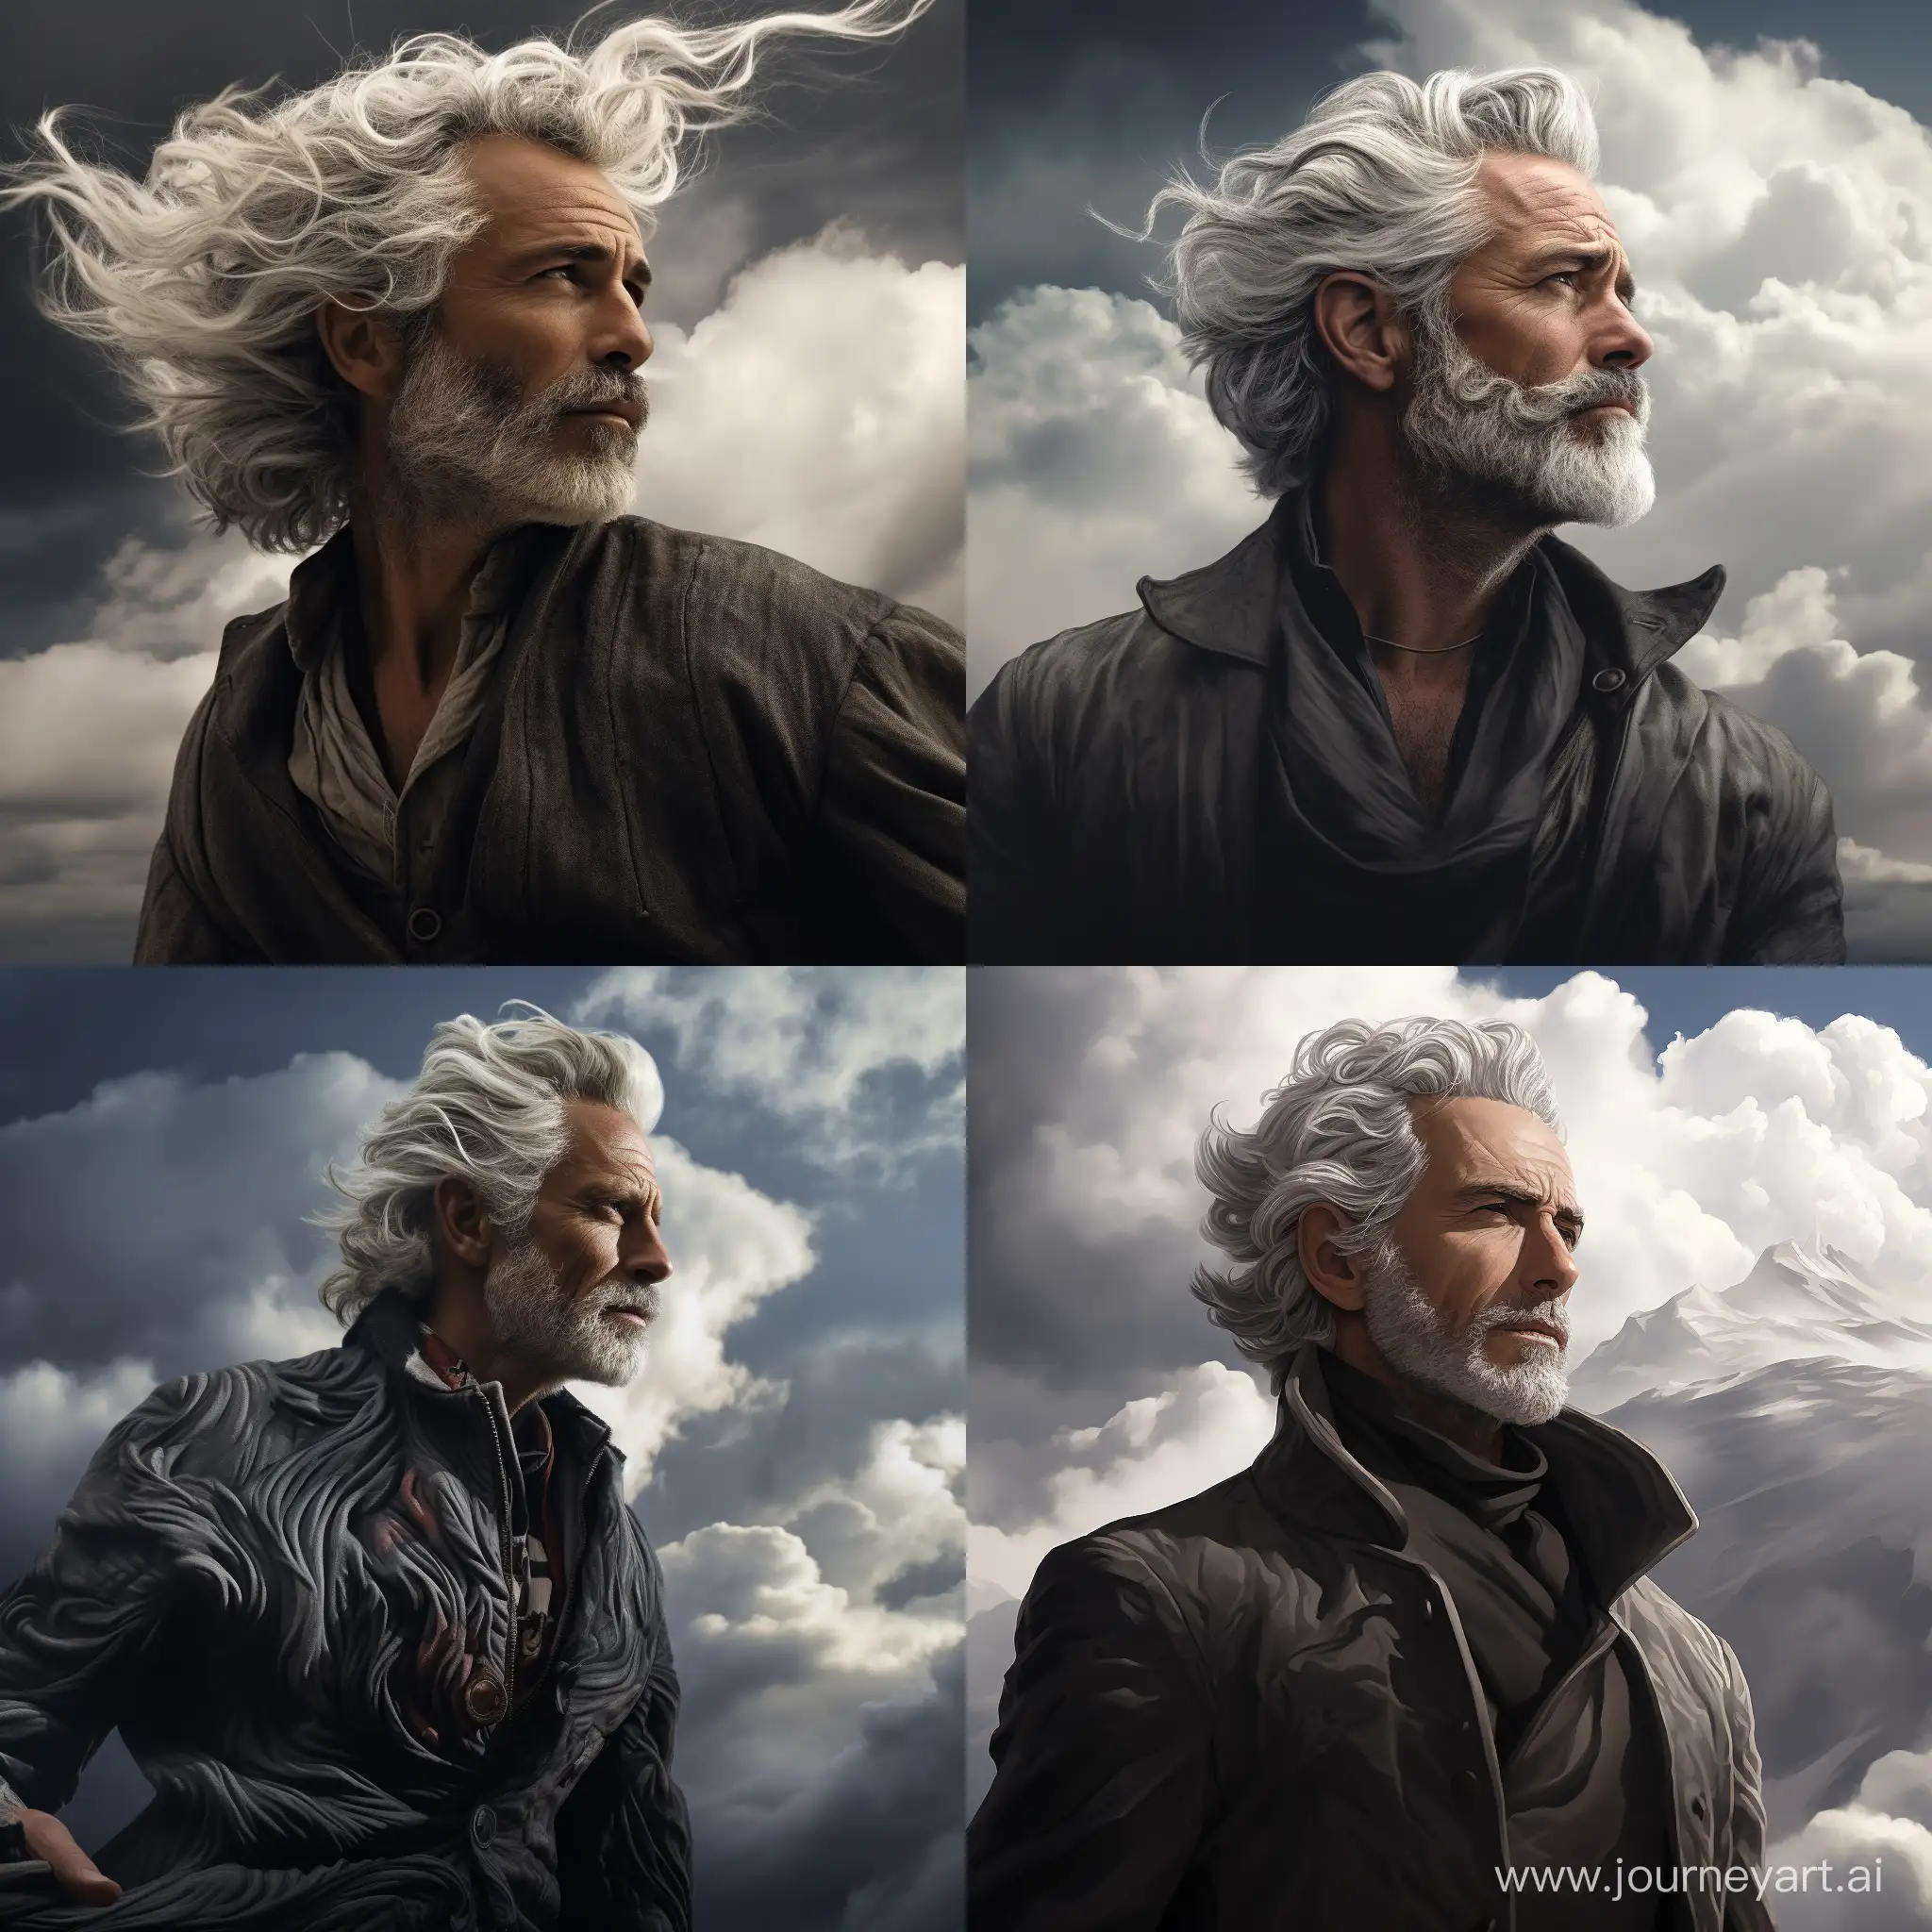 Элегантный, эпичный мужчина с седыми волосами, сращённый с ветром, смотрит влево вдаль на фоне облаков